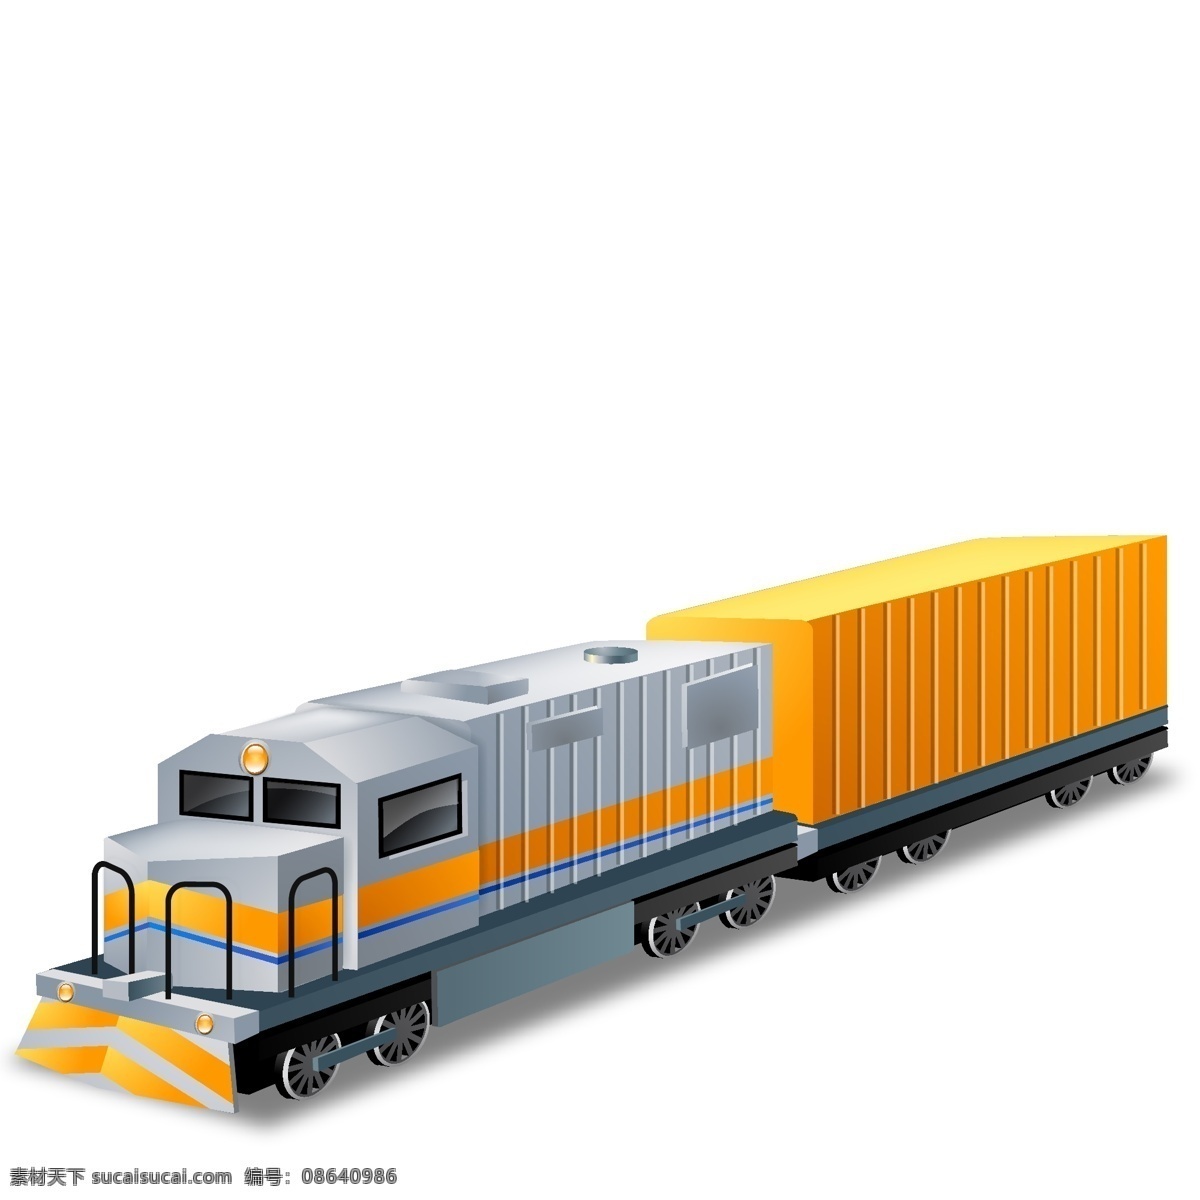 运输矢量图标 图标 运输 运输的图标 火车 汽车 船 飞机 符号 插画 铁路运输 矢量 运输车 陆路 其他矢量图